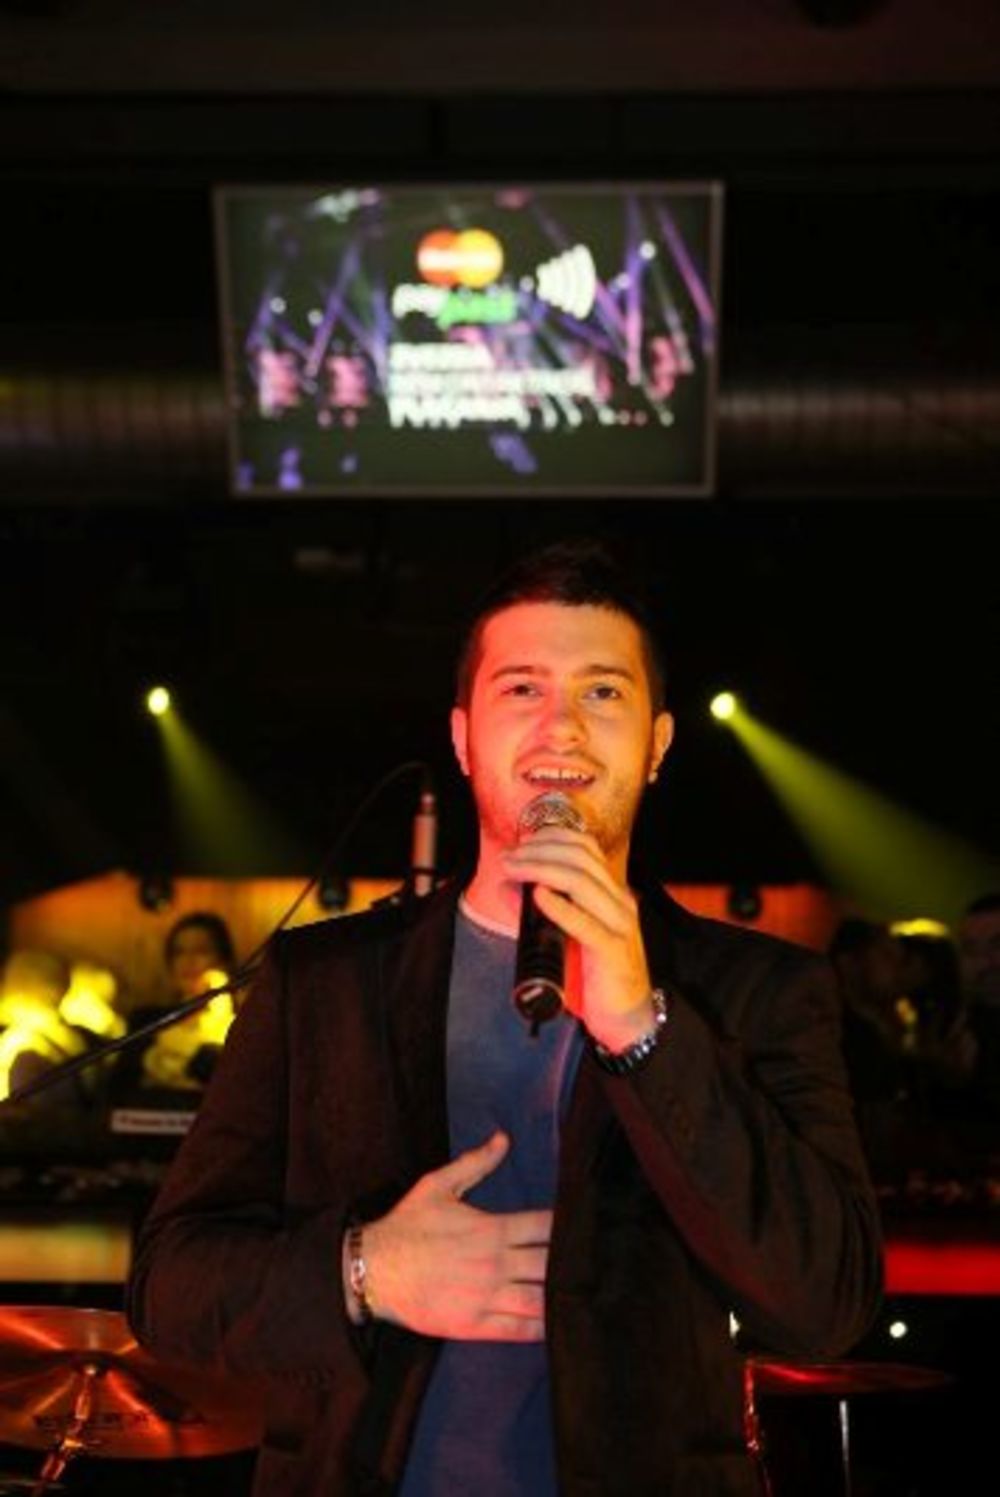 X Factor Adria proslavila je uspeh žurkom Factor VIP party u beogradskom klubu Loft,  ekskluzivnim događajem za partnere i saradnike iz medija. Za dobru atmosferu na MasterCard X Factor VIP žurki bili su zaduženi sadašnji i bivši učesnici X Factor-a: Daniel Ka